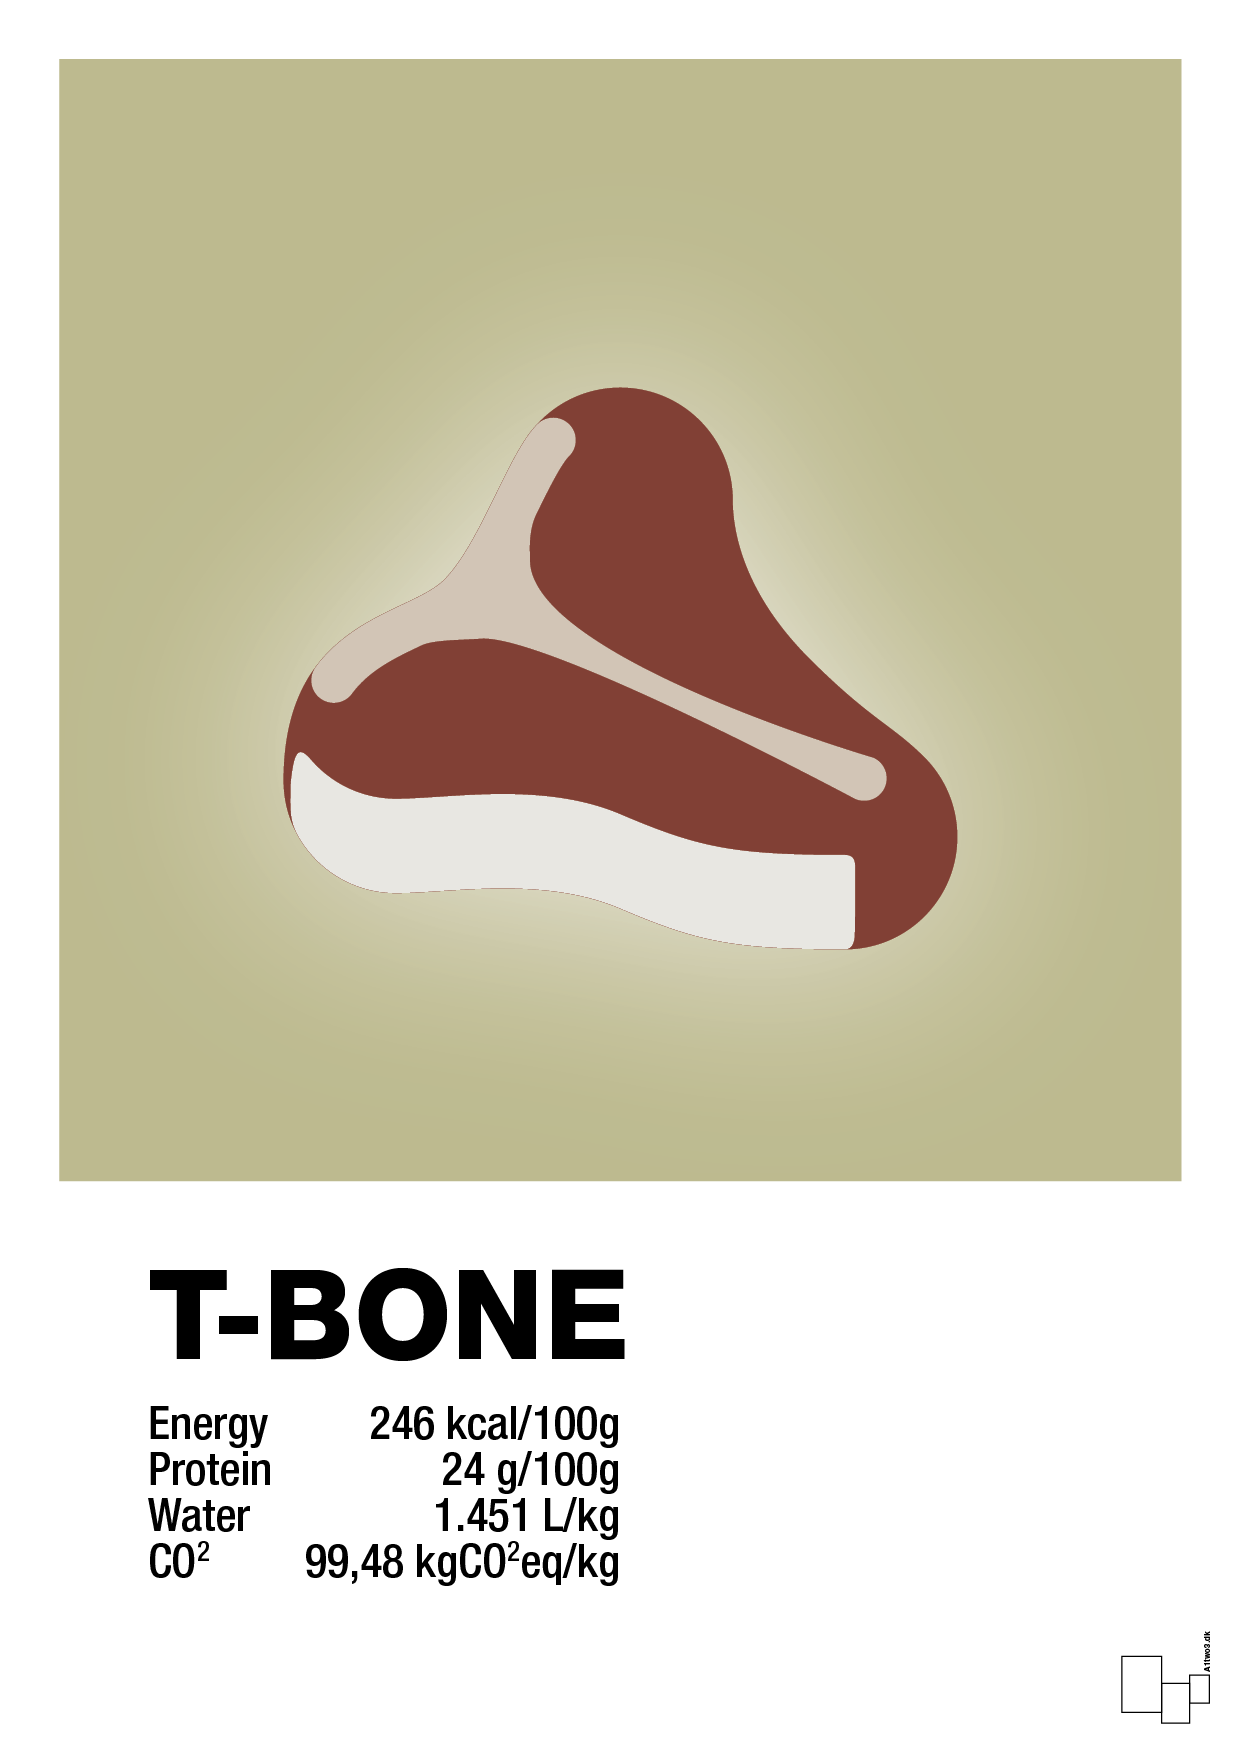 t-bone nutrition og miljø - Plakat med Mad & Drikke i Back to Nature